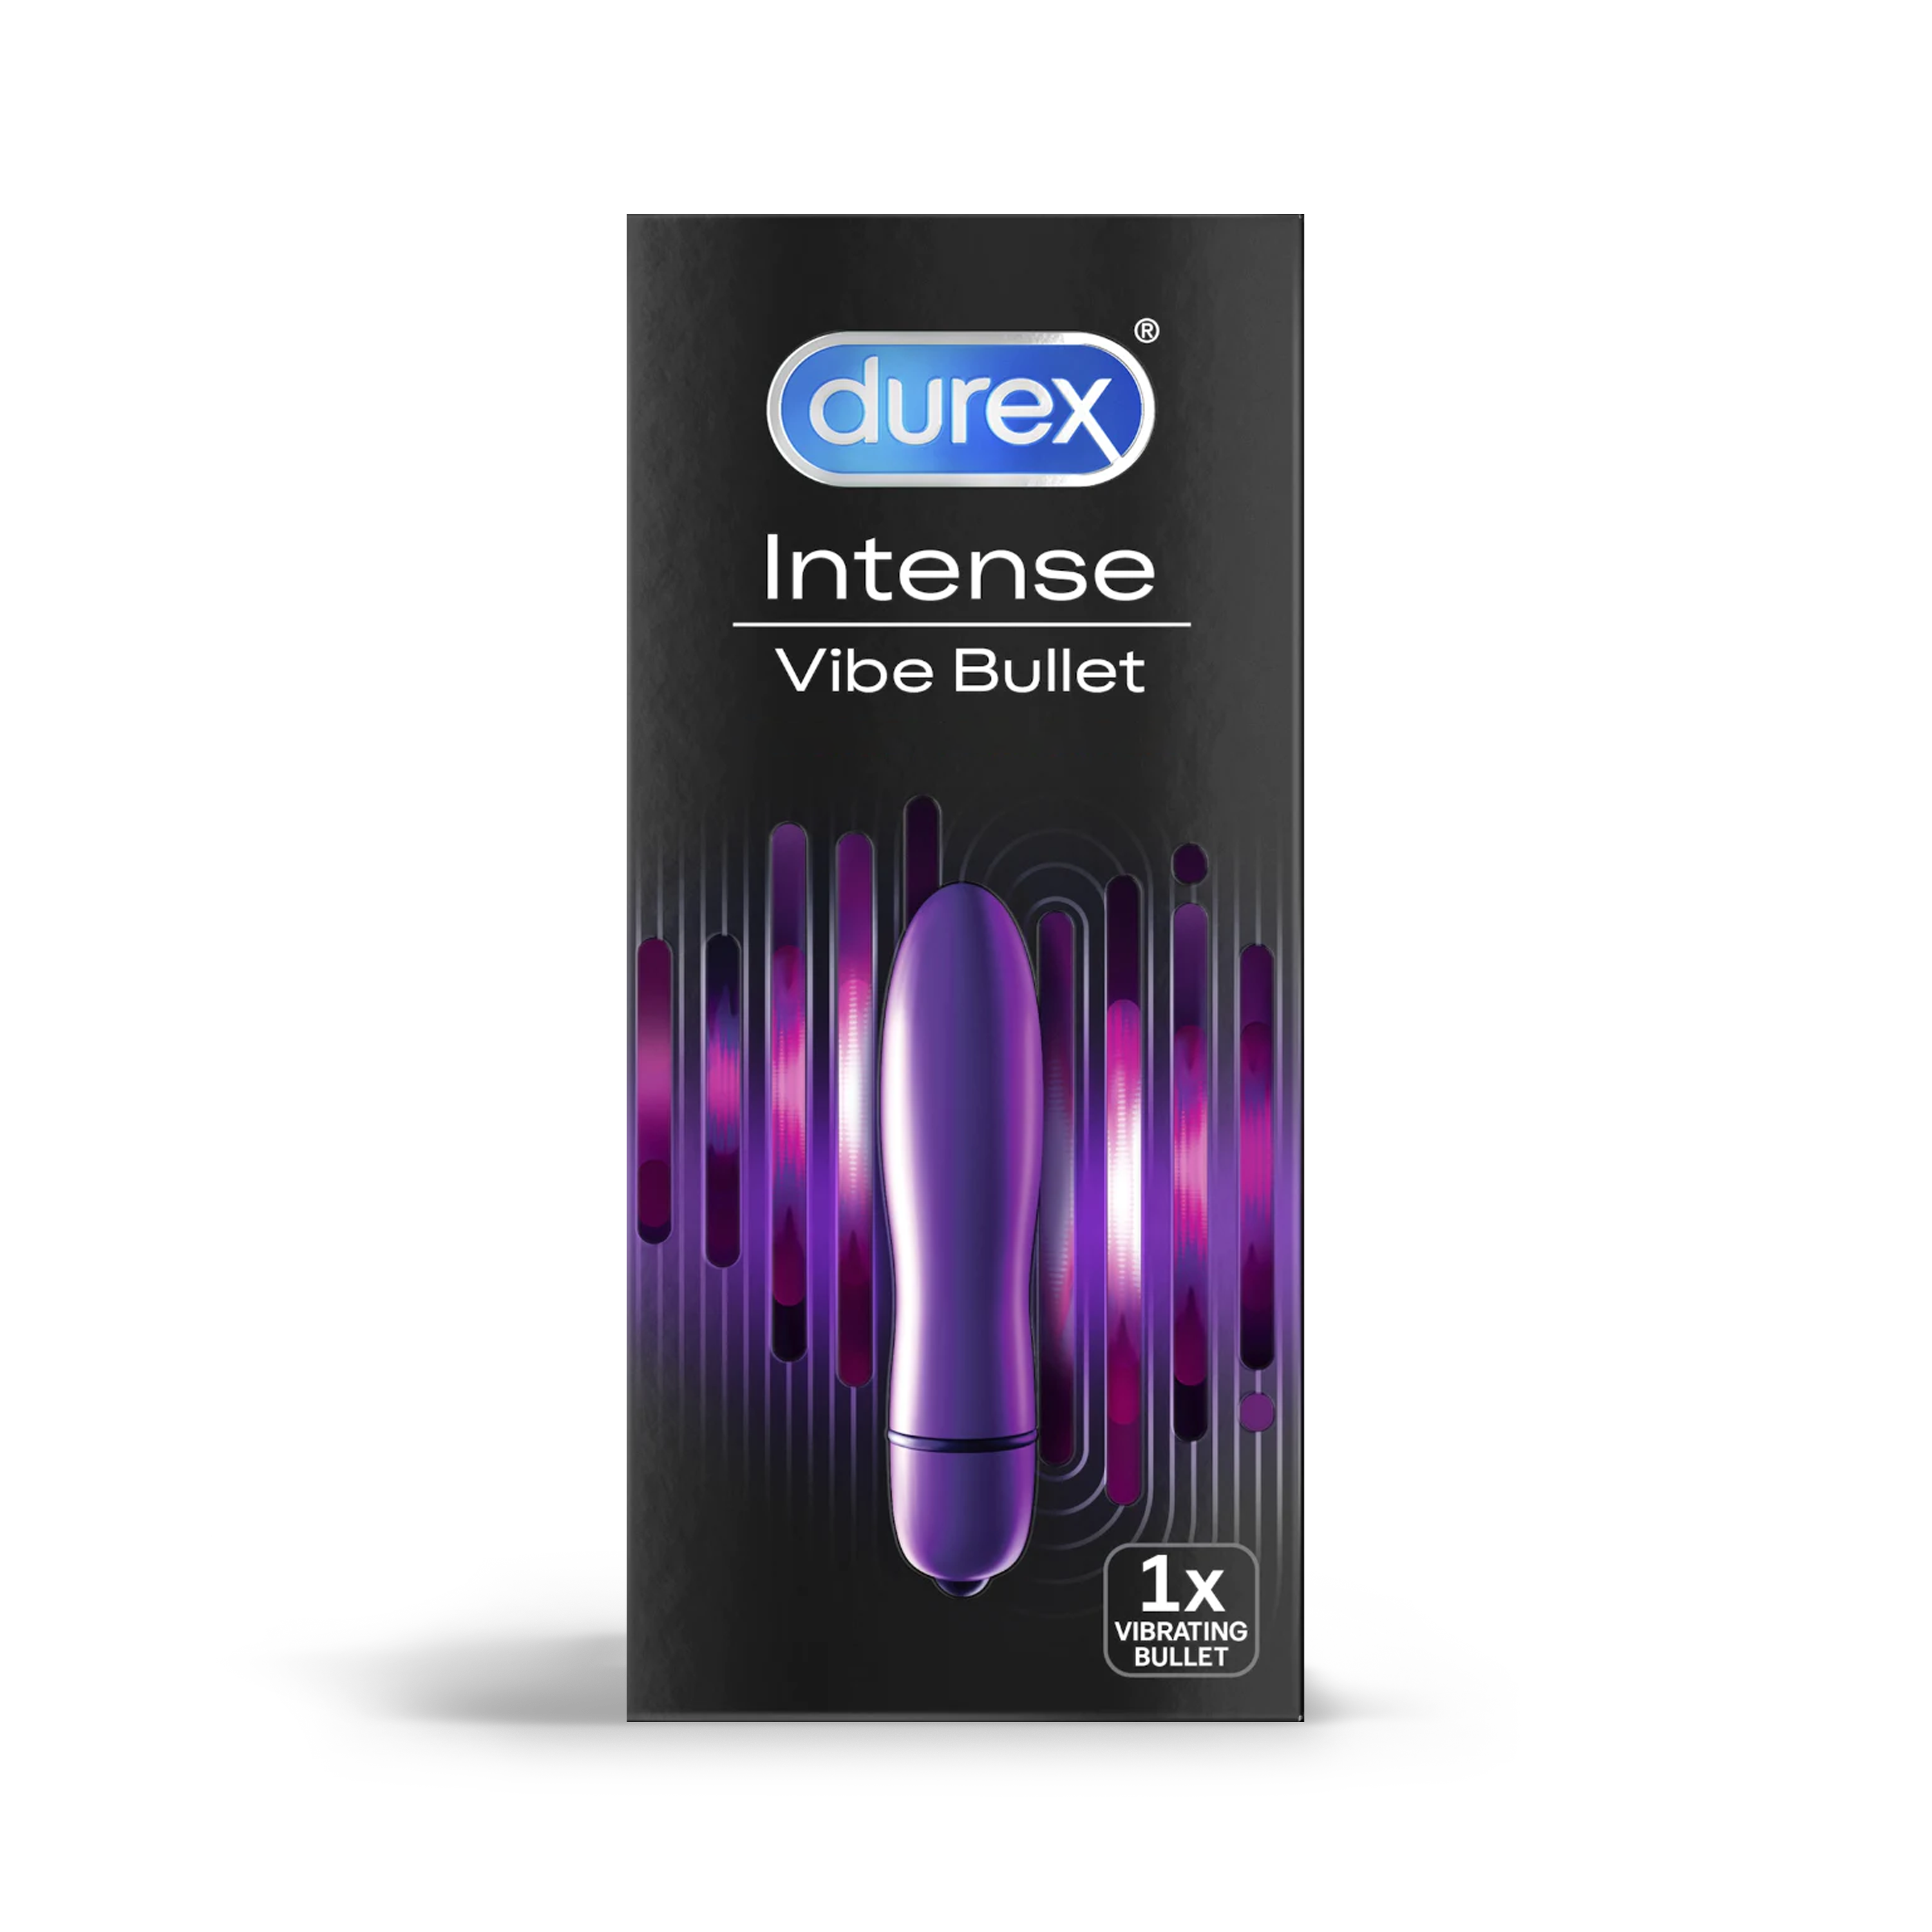 Durex Intense Delight Bullet Vibrator Durex UK image image